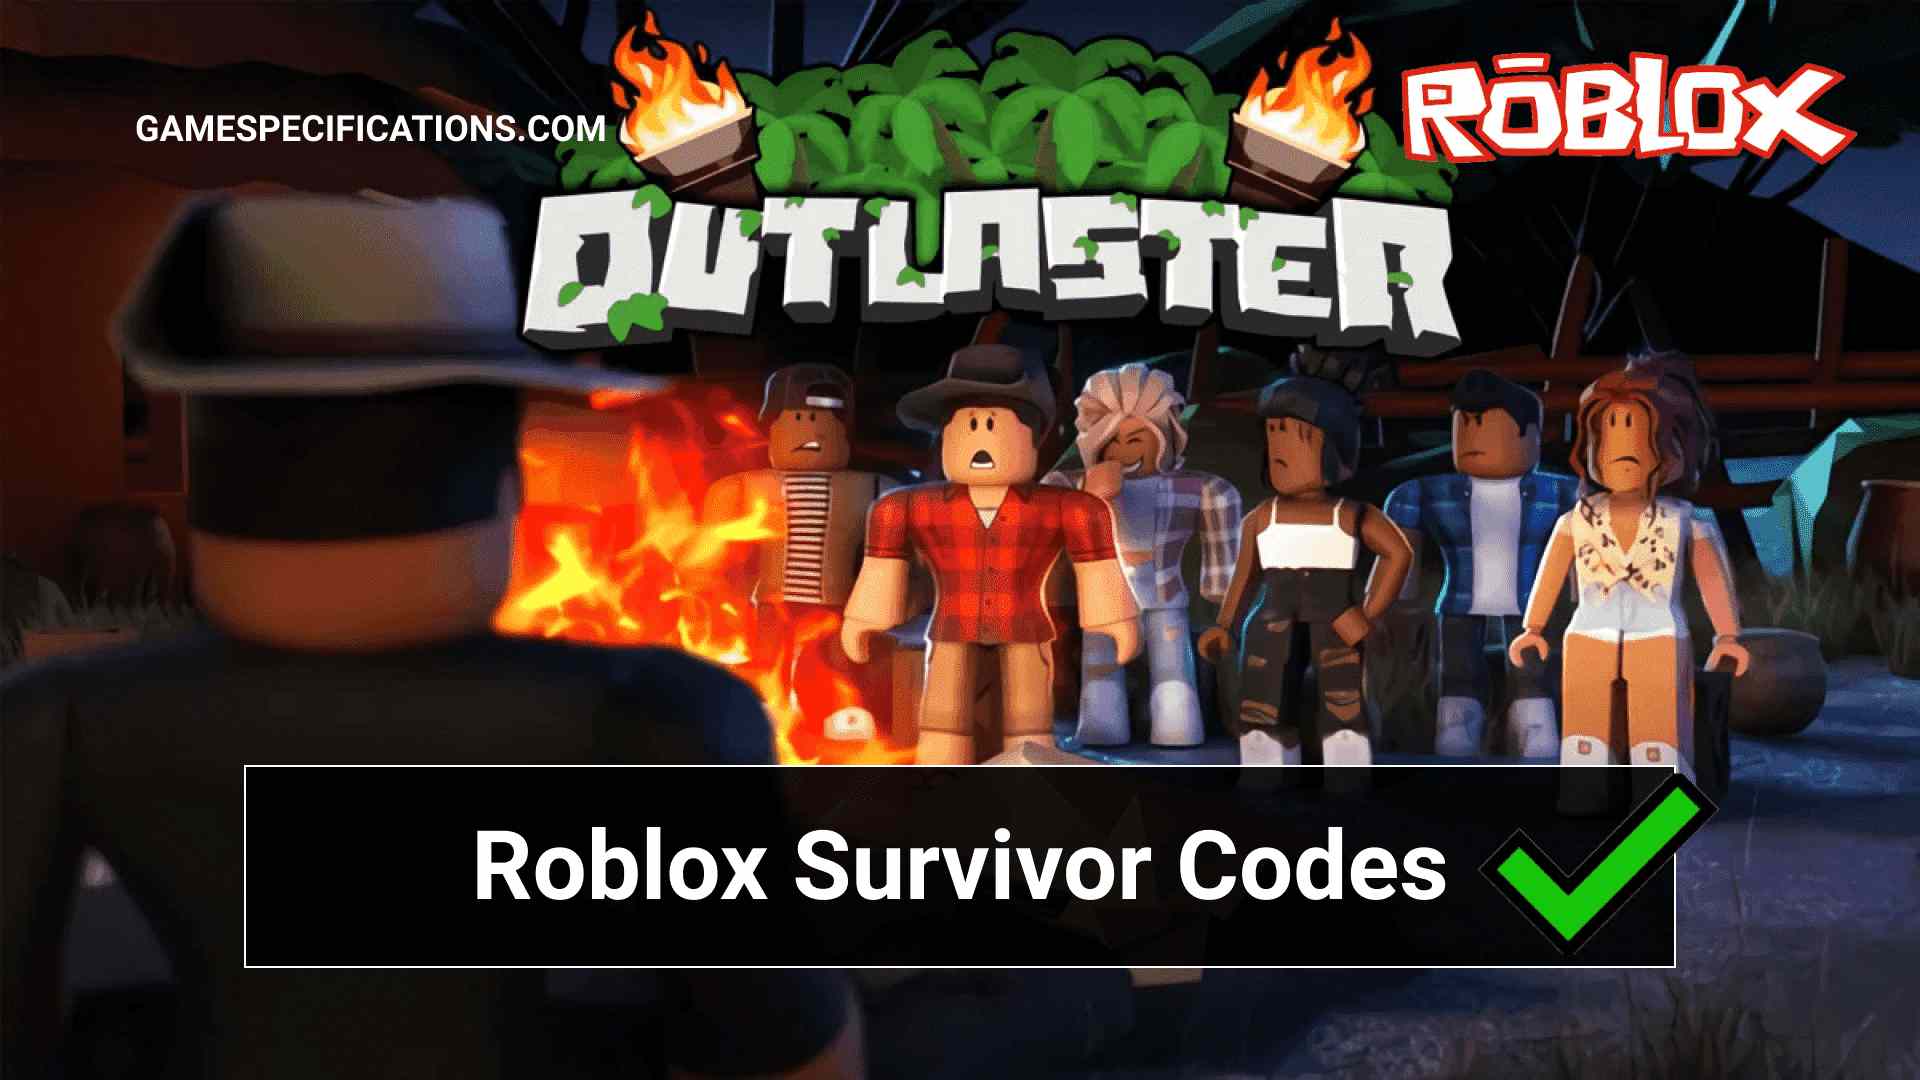 Roblox Survivor Codes July 2021 Game Specifications - roblox survivor all codes